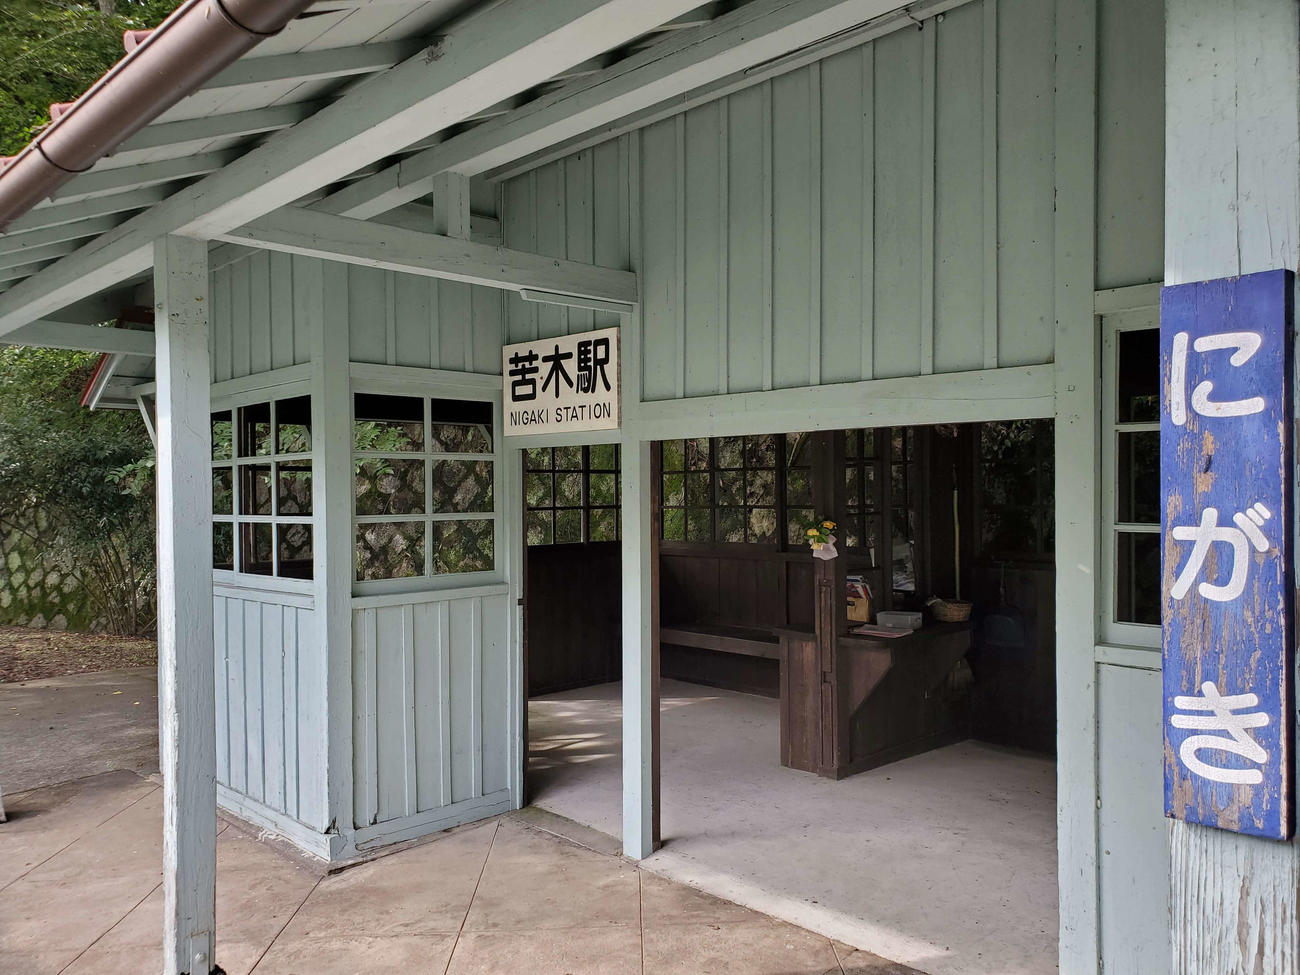 〈4〉苦木駅跡は駅舎が改修されて休憩所となっている